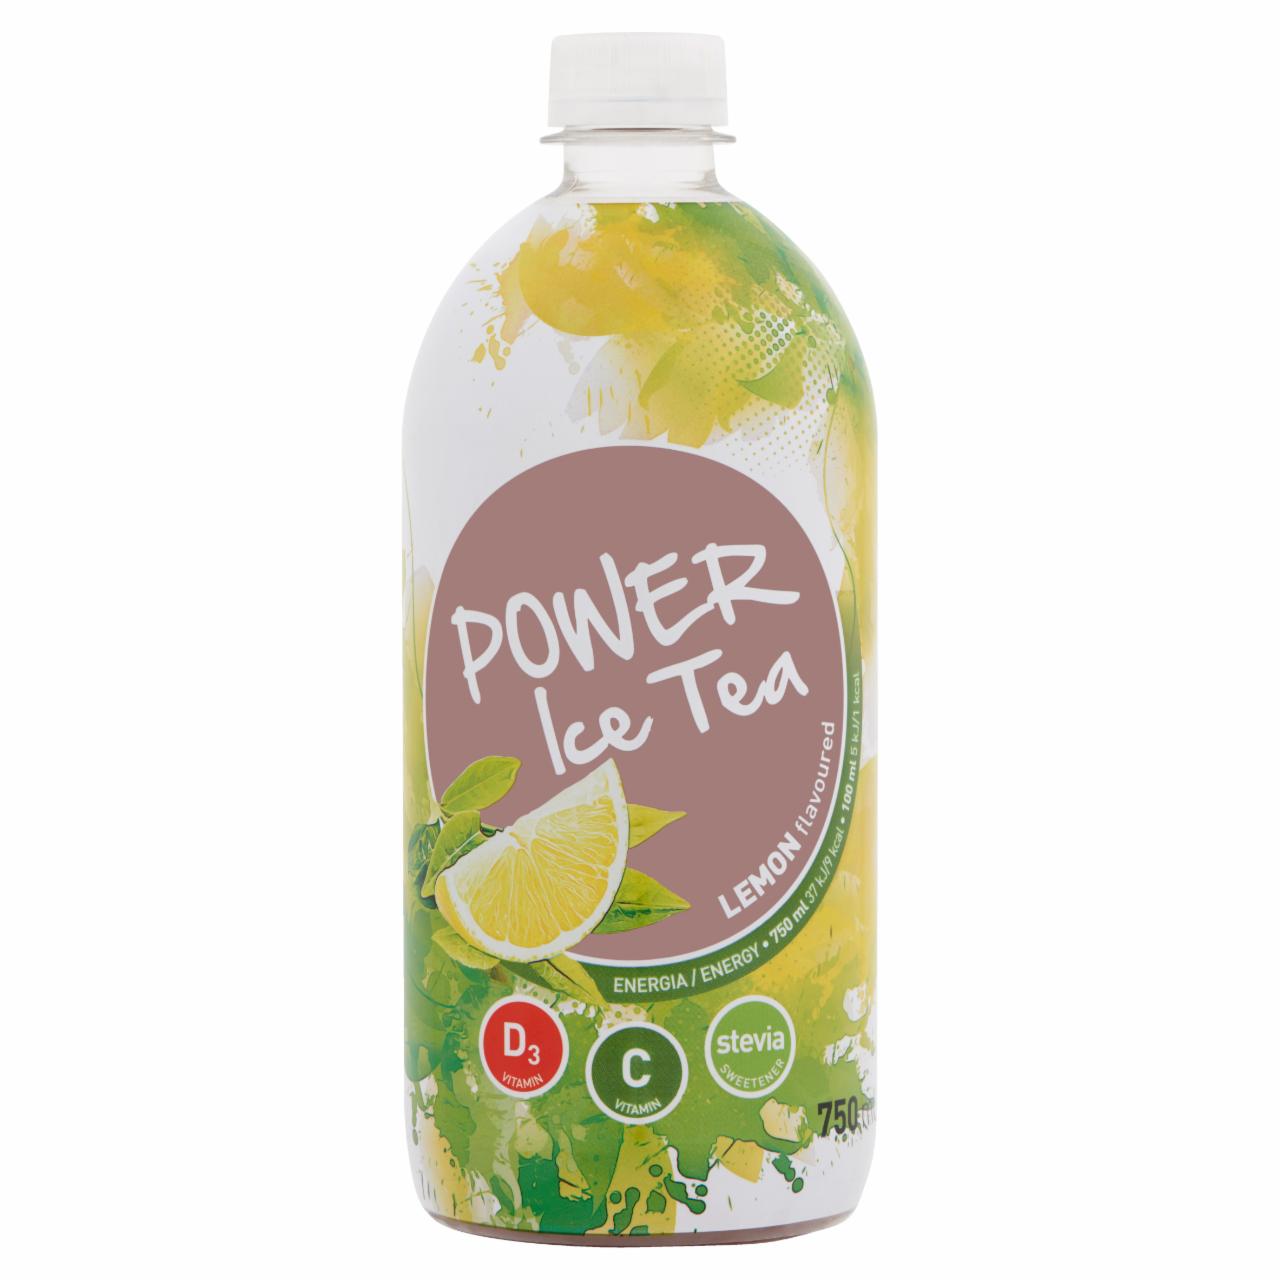 Képek - Power Fruit Ice Tea citrom ízű, forrásvíz alapú, energiamentes üdítőital édesítőszerekkel 750 ml